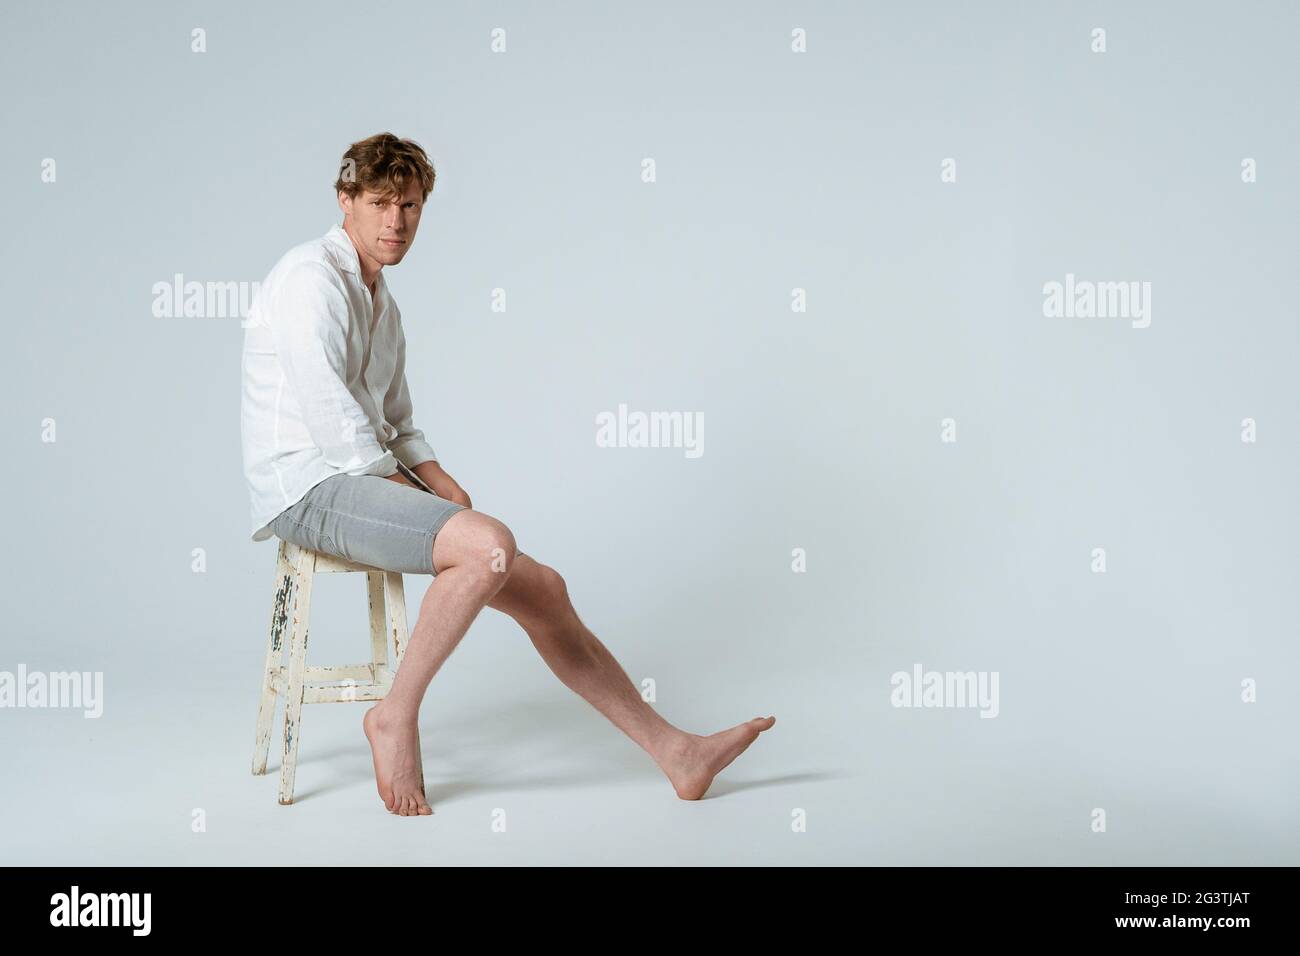 Foto a lunghezza intera di un giovane bel ragazzo seduto su una sedia che indossa una camicia bianca e pantaloncini grigi con una gamba che guarda circa Foto Stock